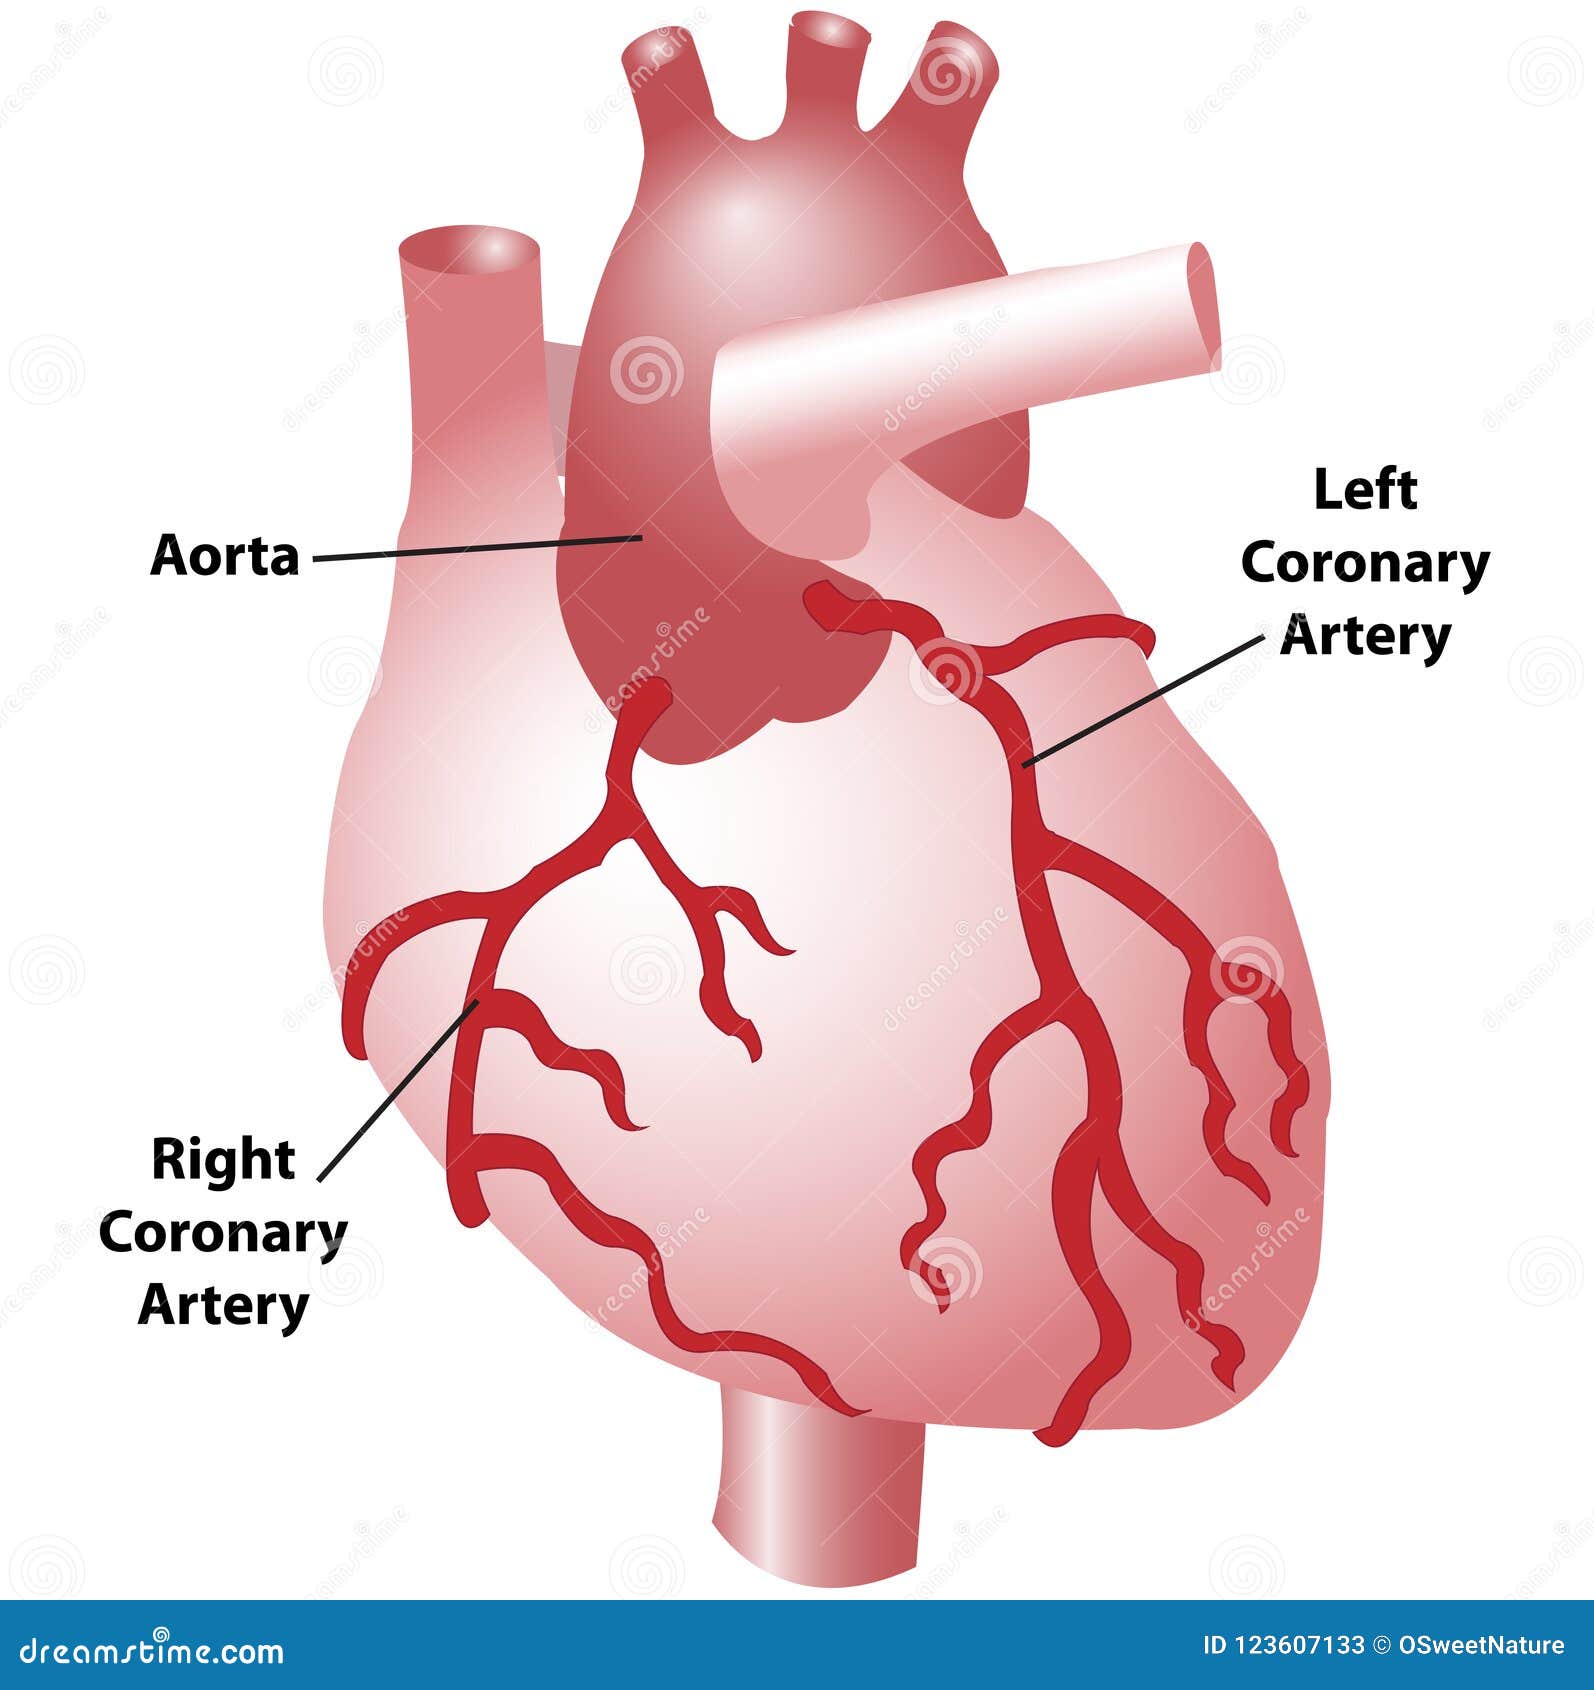 Coronary Arteries Of The Heart Stock Illustration Illustration